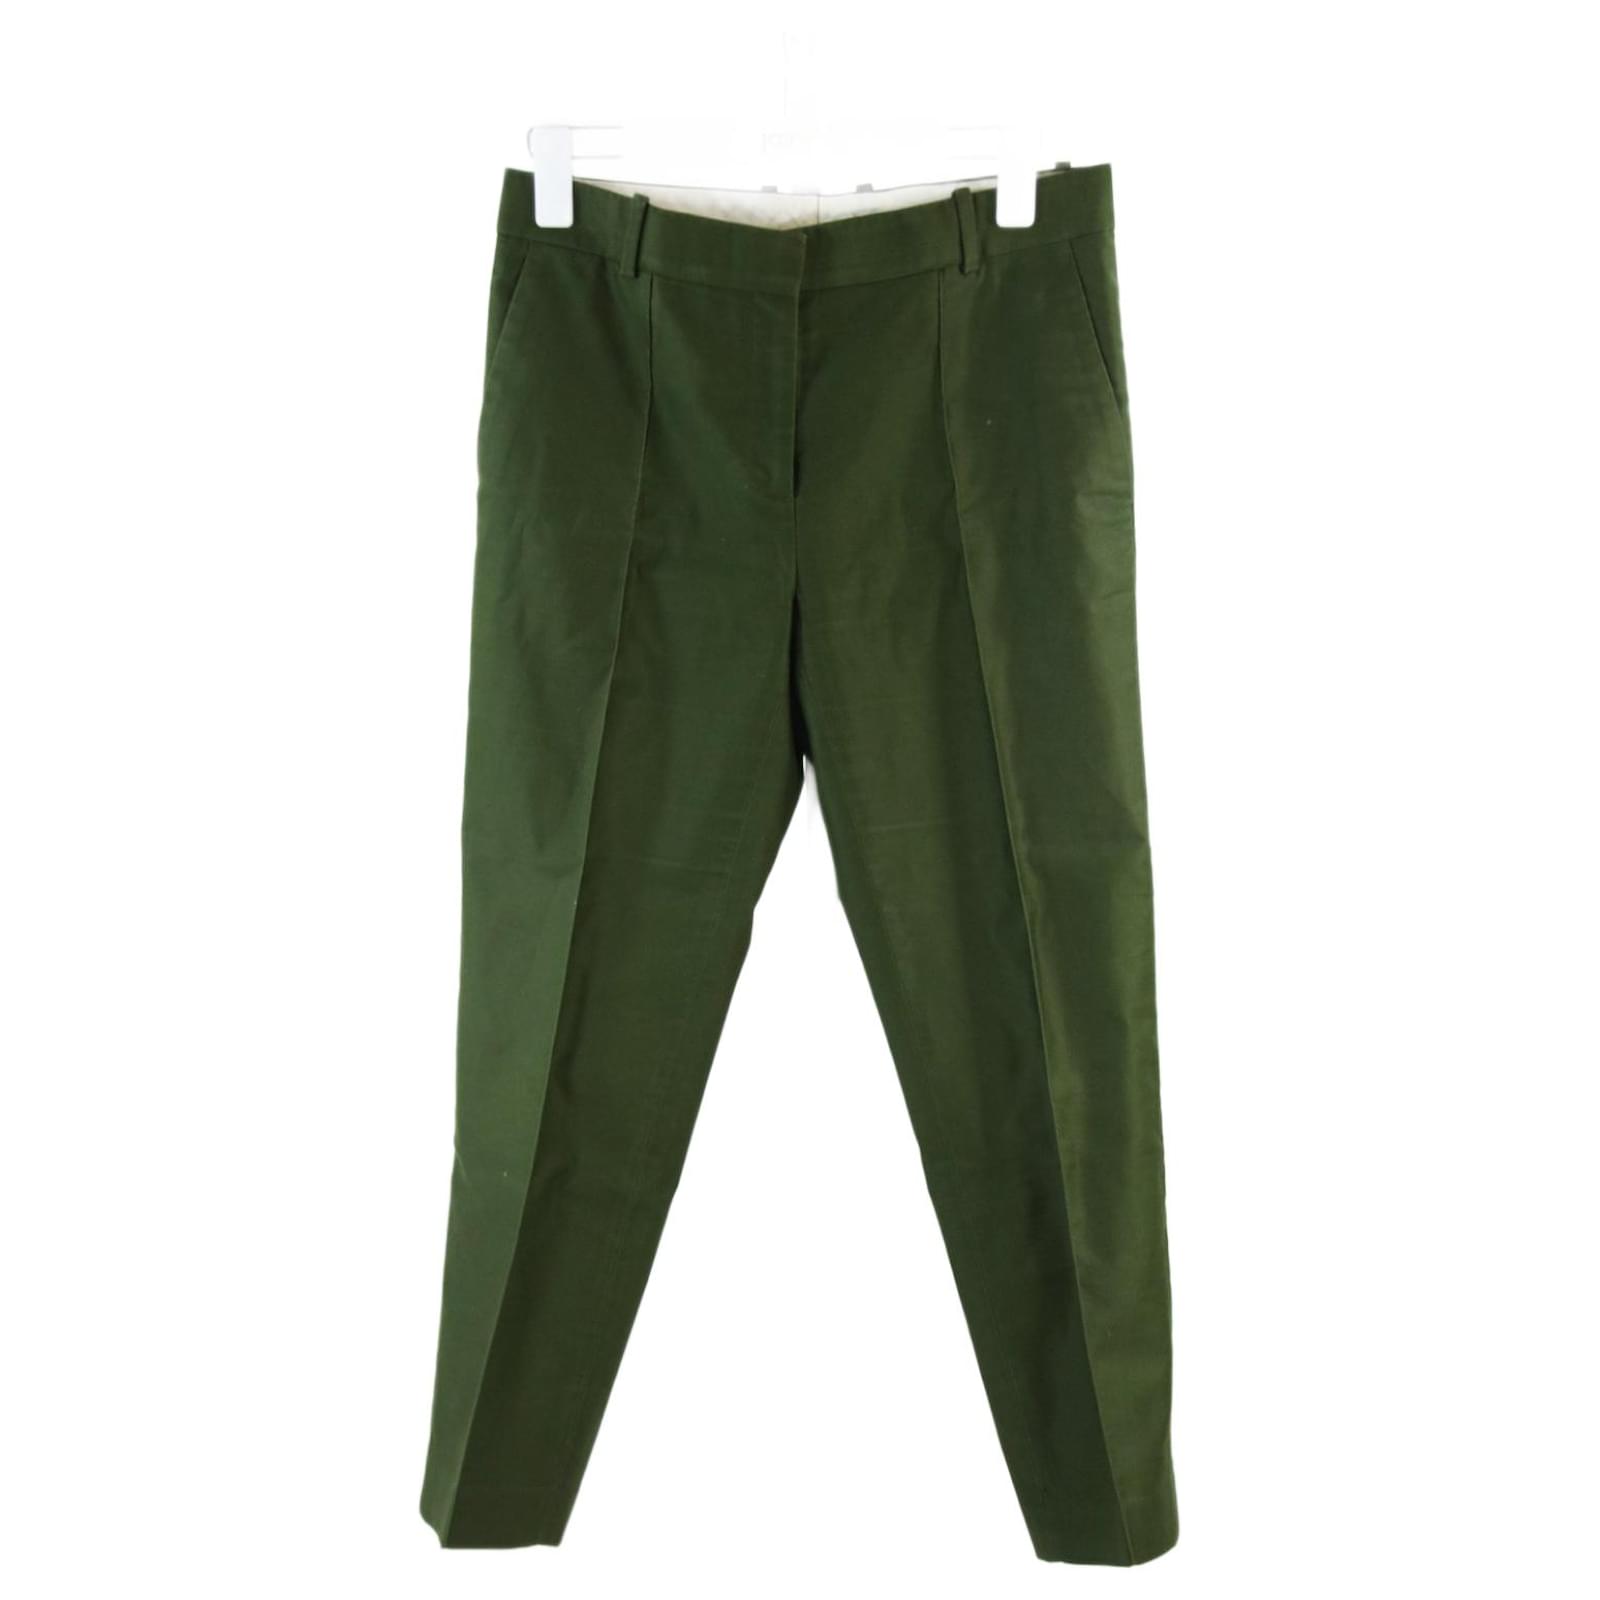 https://cdn1.jolicloset.com/imgr/full/2022/11/682834-1/khaki-cotton-celine-trousers-36-pants-leggings.jpg